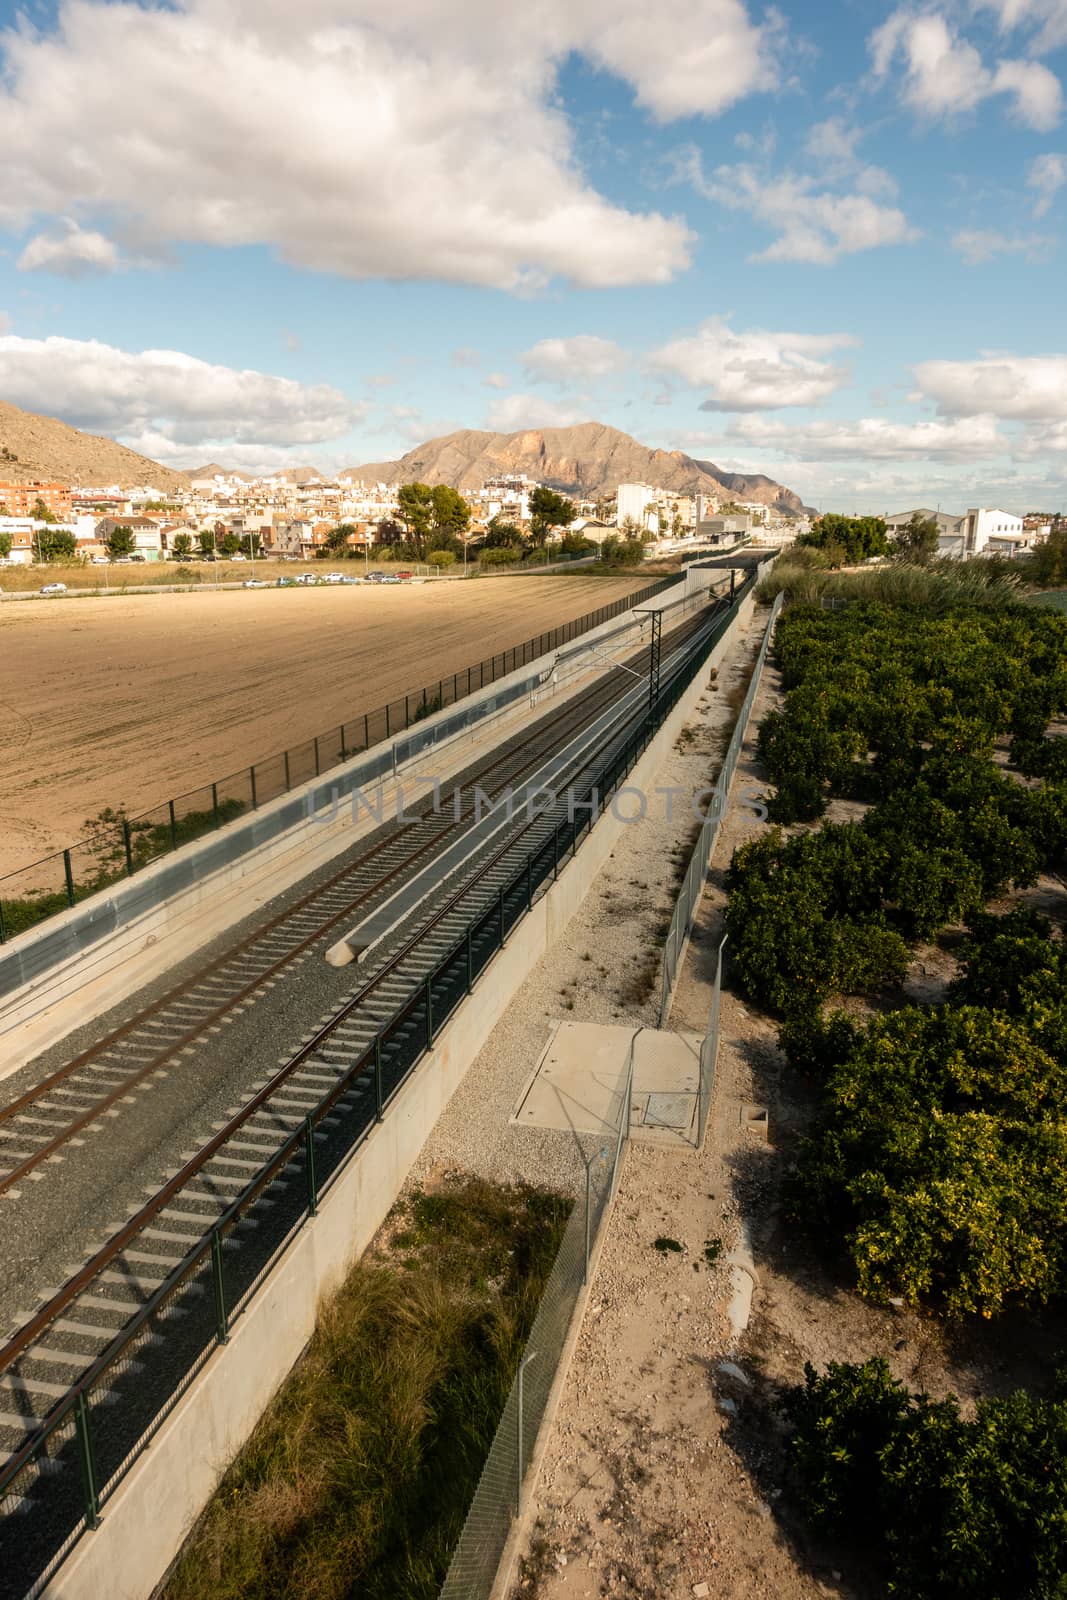 Railway line at Orihuela in Spain as viewed from bridge.